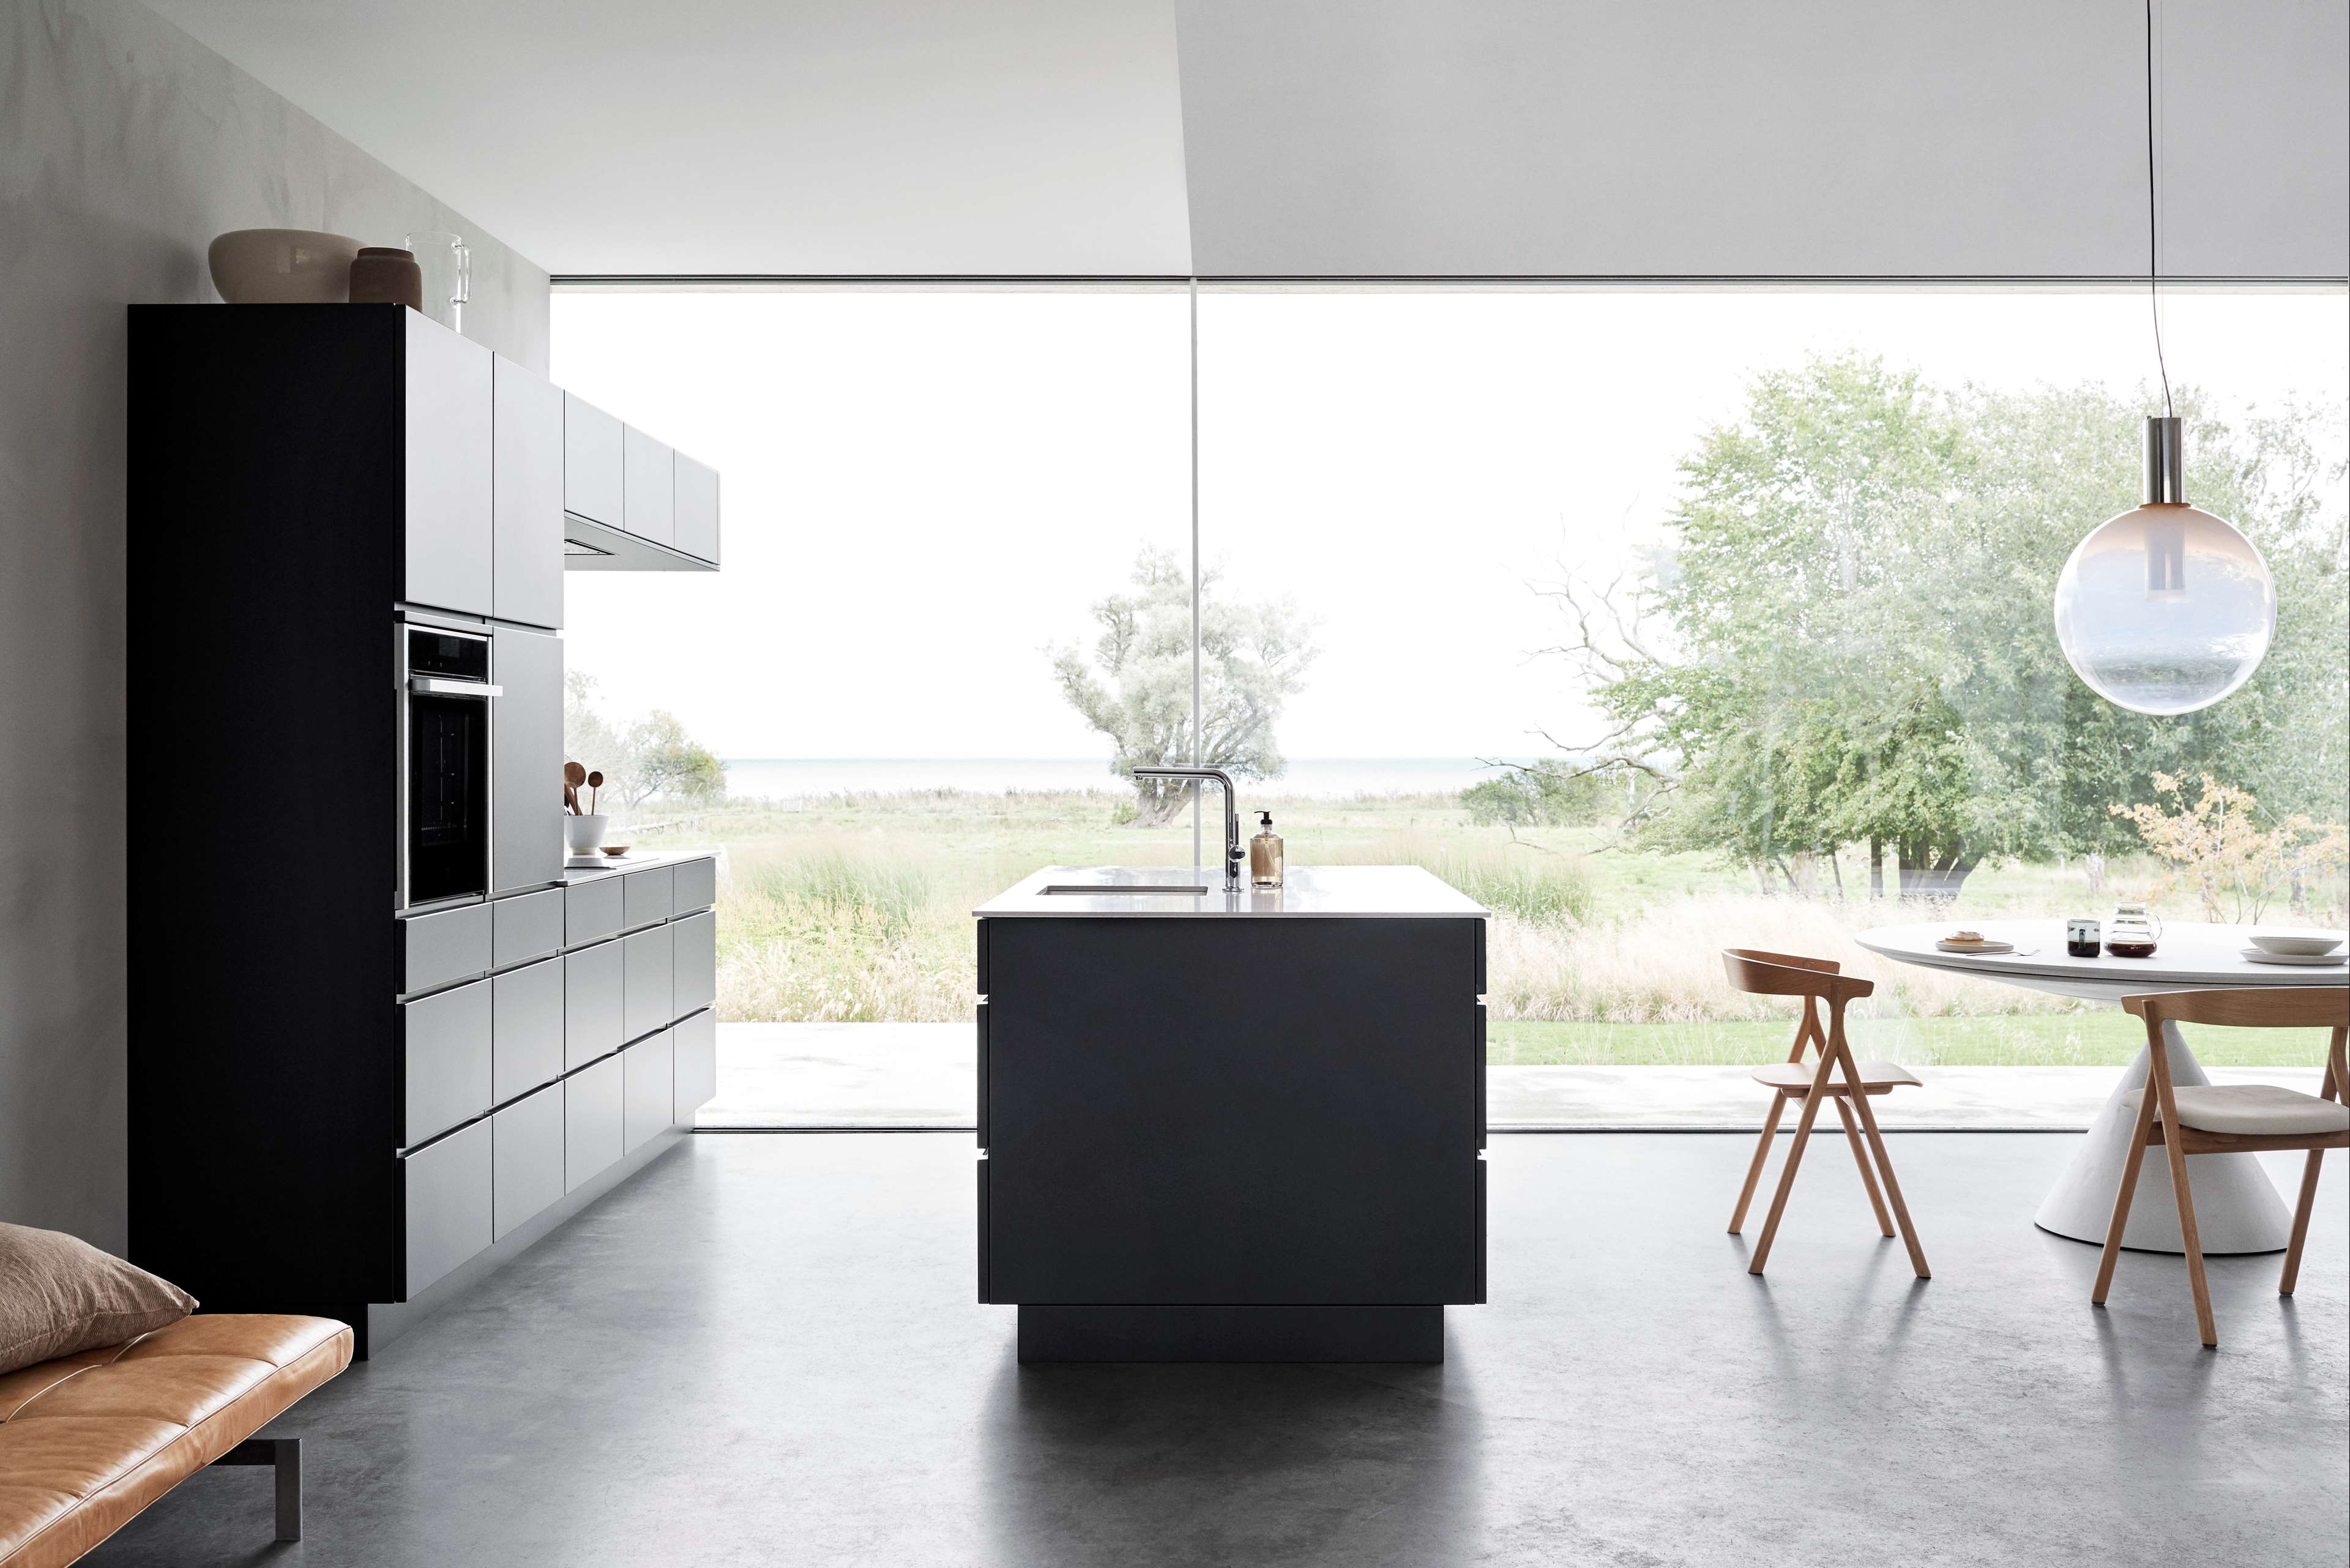 Svart kjøkken med kjøkkenøy og fargede svarte fronter